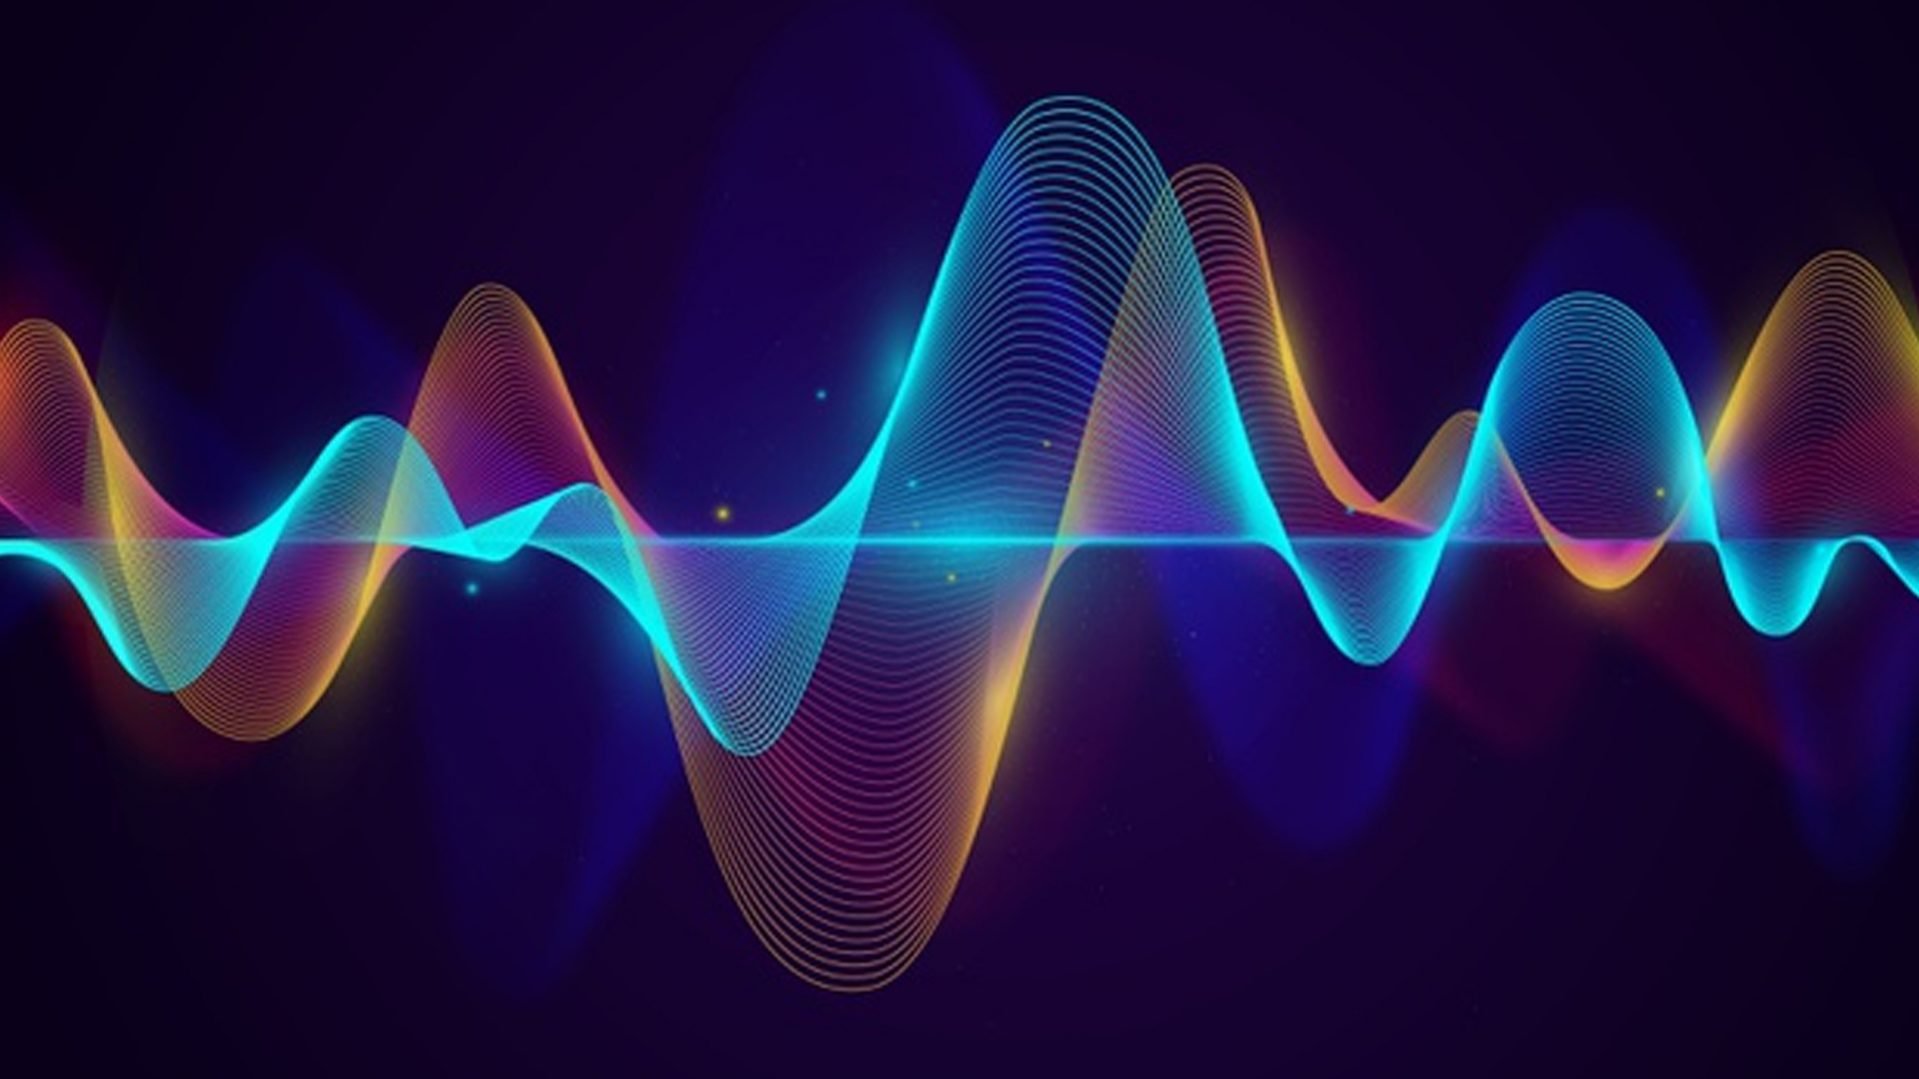 Физика. Звук и звуковые волны